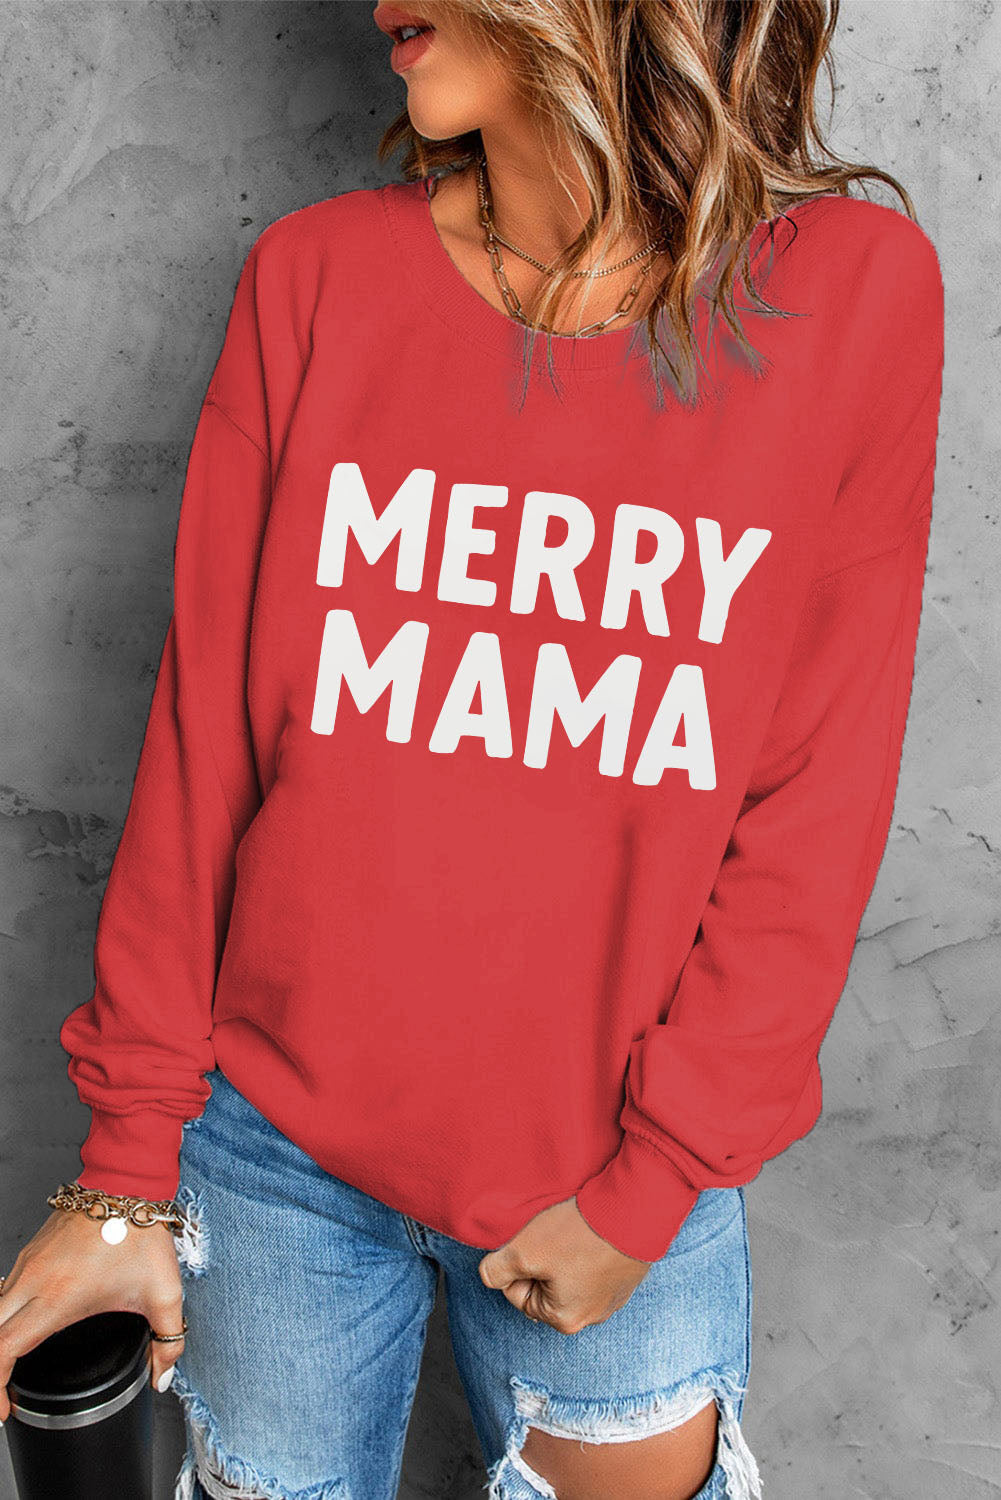 MERRY MAMA Graphic Round Neck Sweatshirt